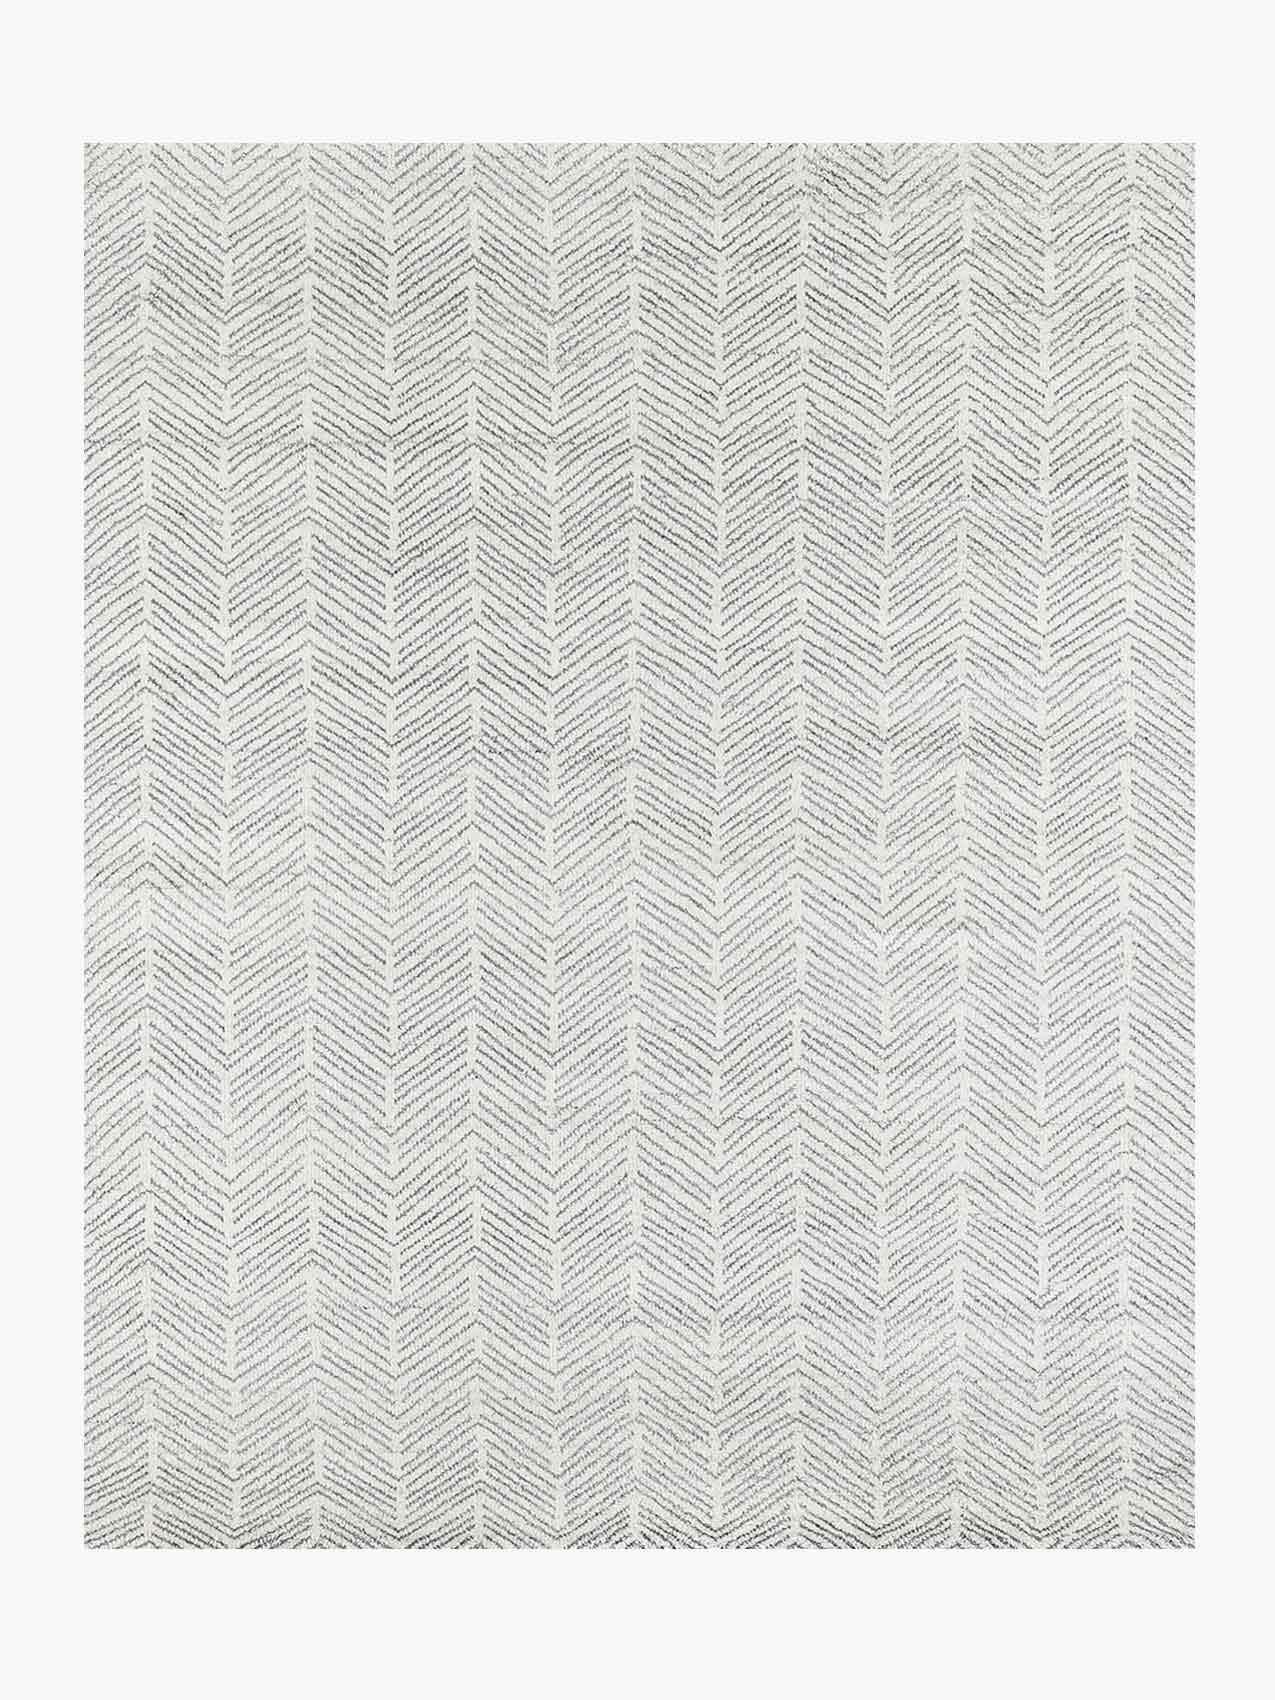 For Sale: White (White/Silver) Ben Soleimani Alia Rug– Hand-woven Chevron Wool + Viscose Black/Gray 9'x12'